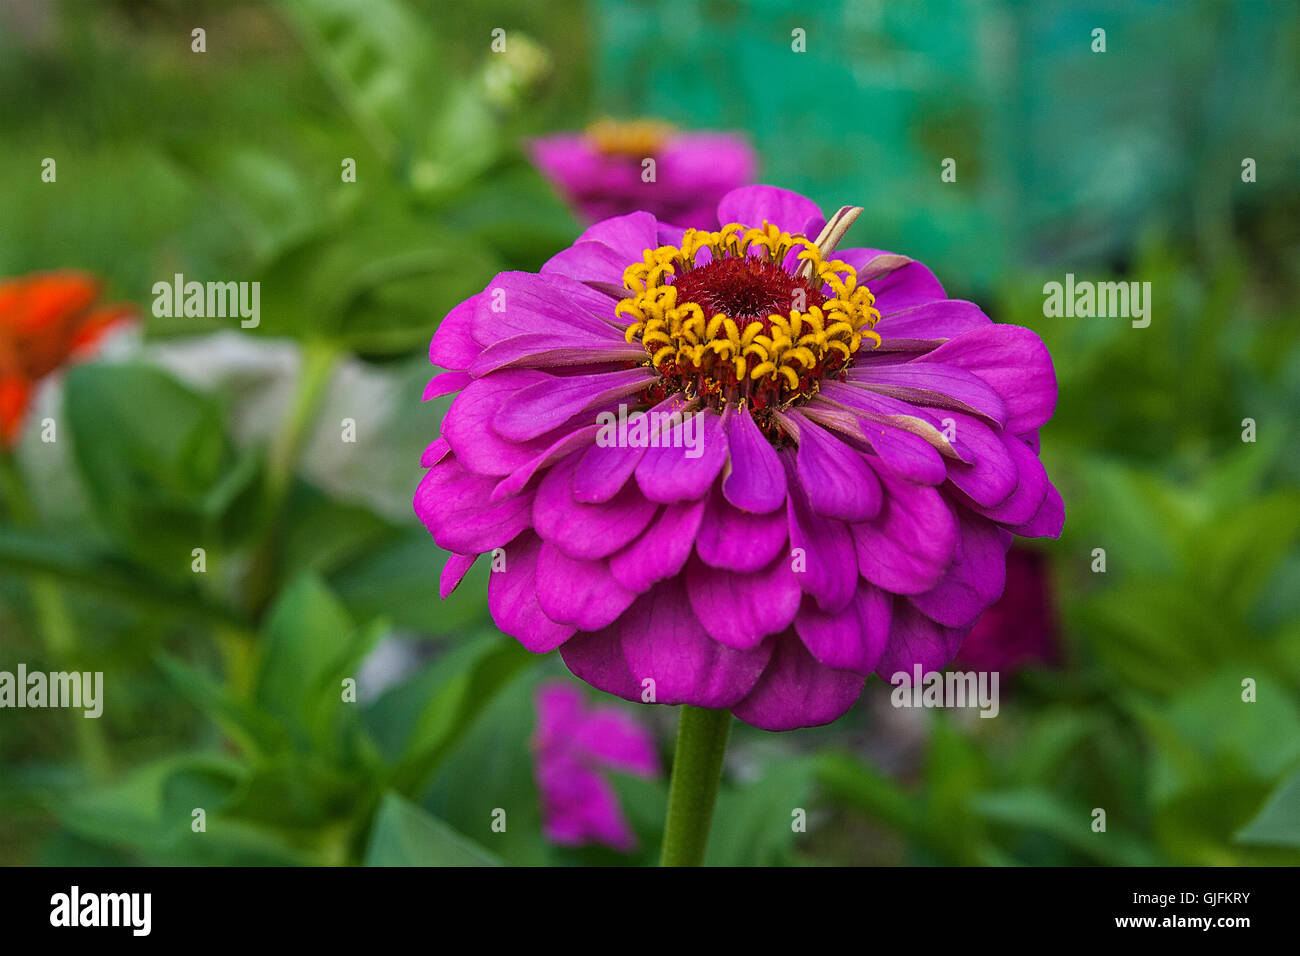 Schöne Zinnie Blumen auf grünem Blatt Hintergrund. Nahaufnahme der Zinnie Blumen im Sommergarten. Stockfoto